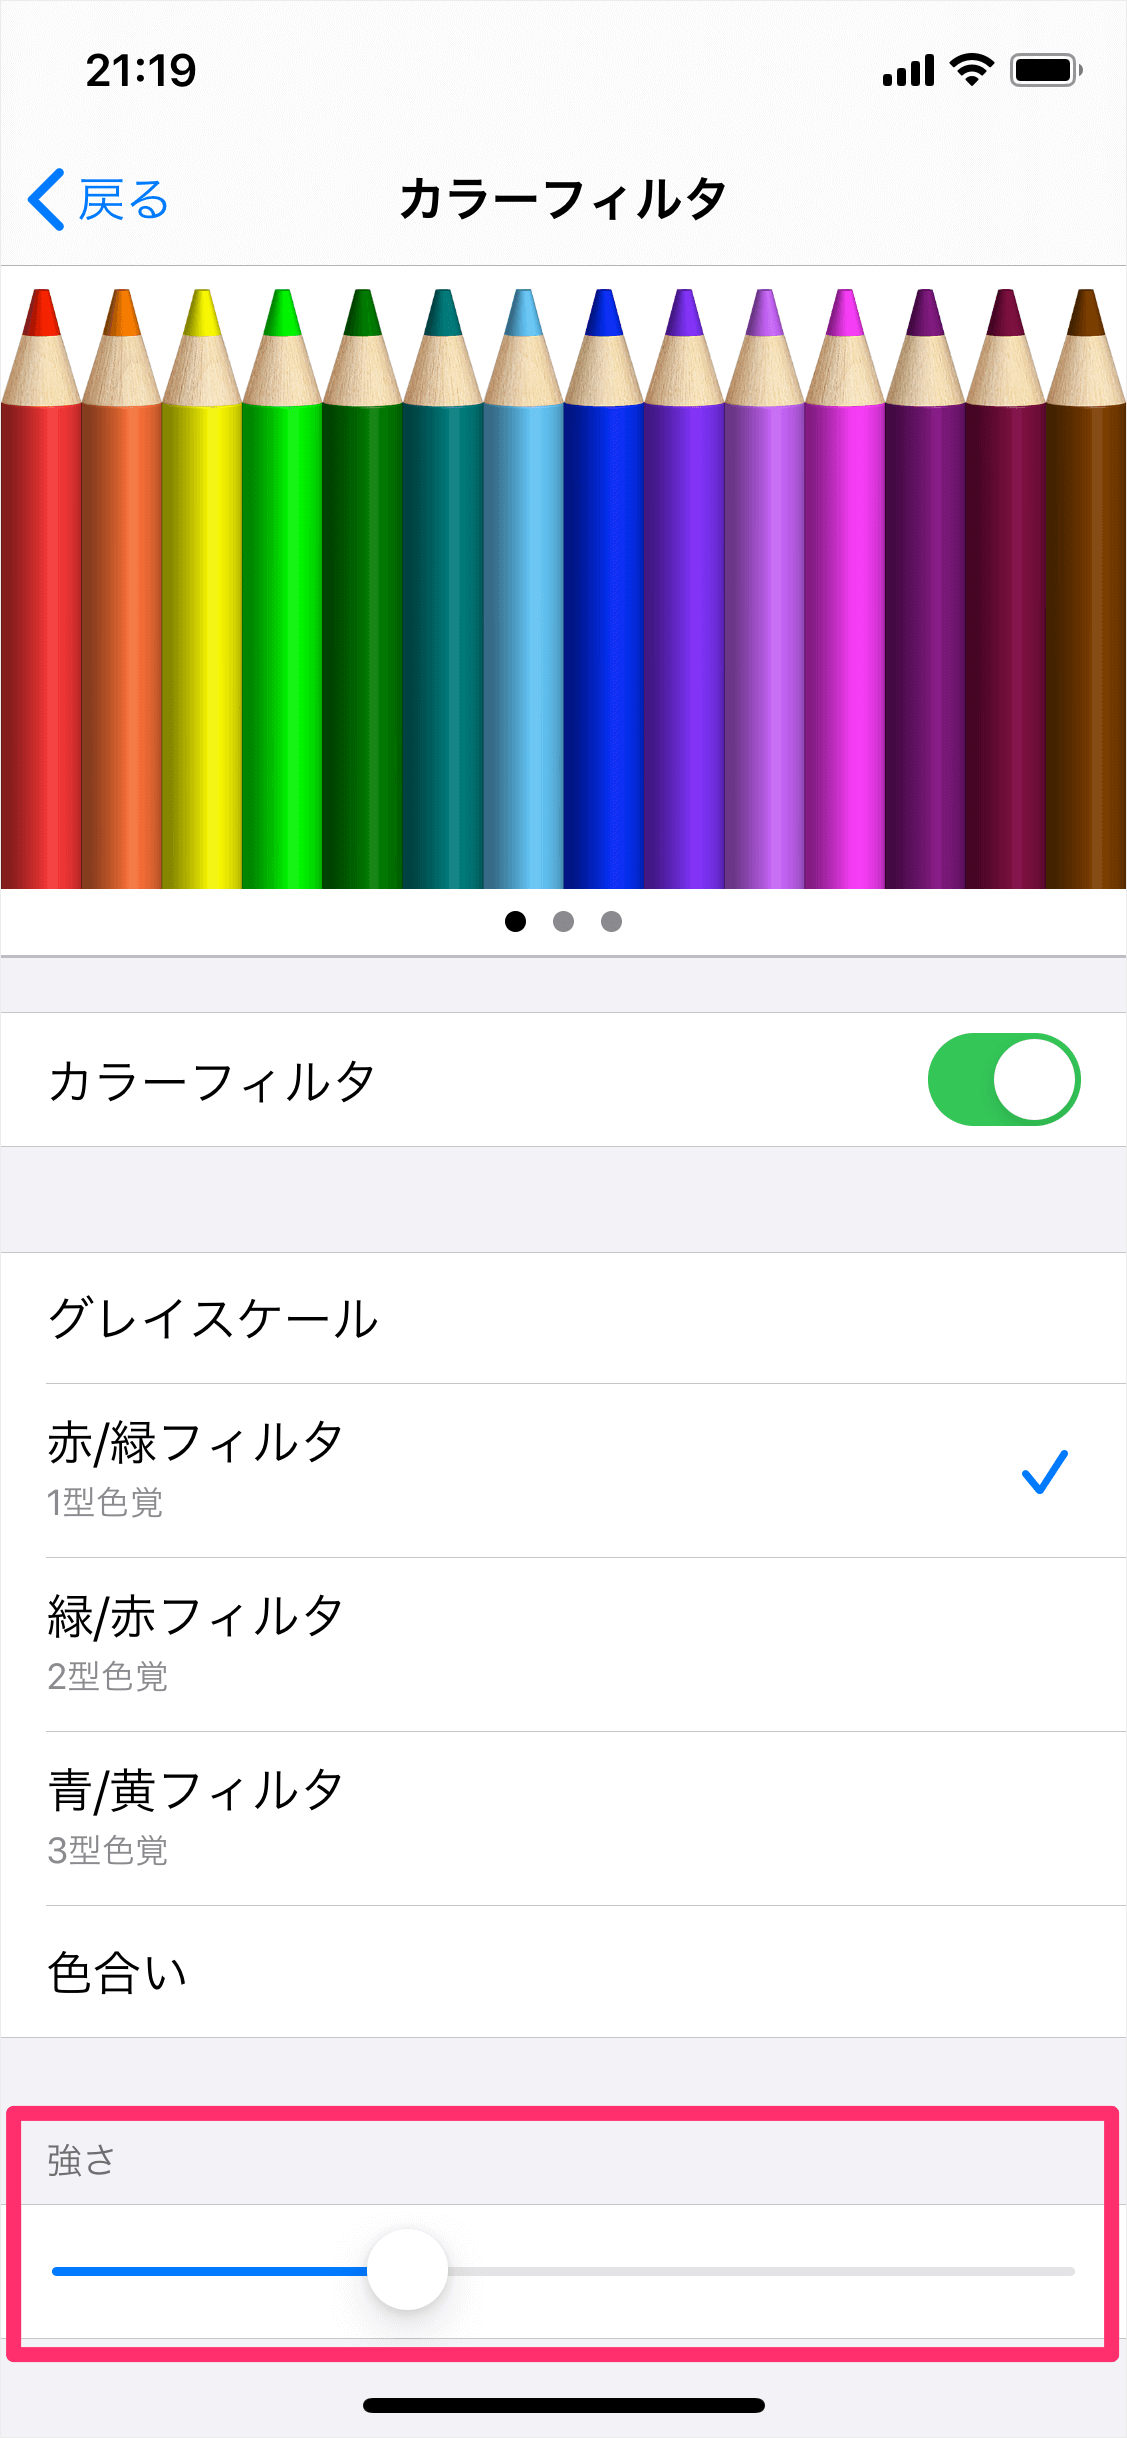 Iphone Ipad ディスプレイ調整 カラーフィルタの設定 色覚 色合い グレースケール Pc設定のカルマ